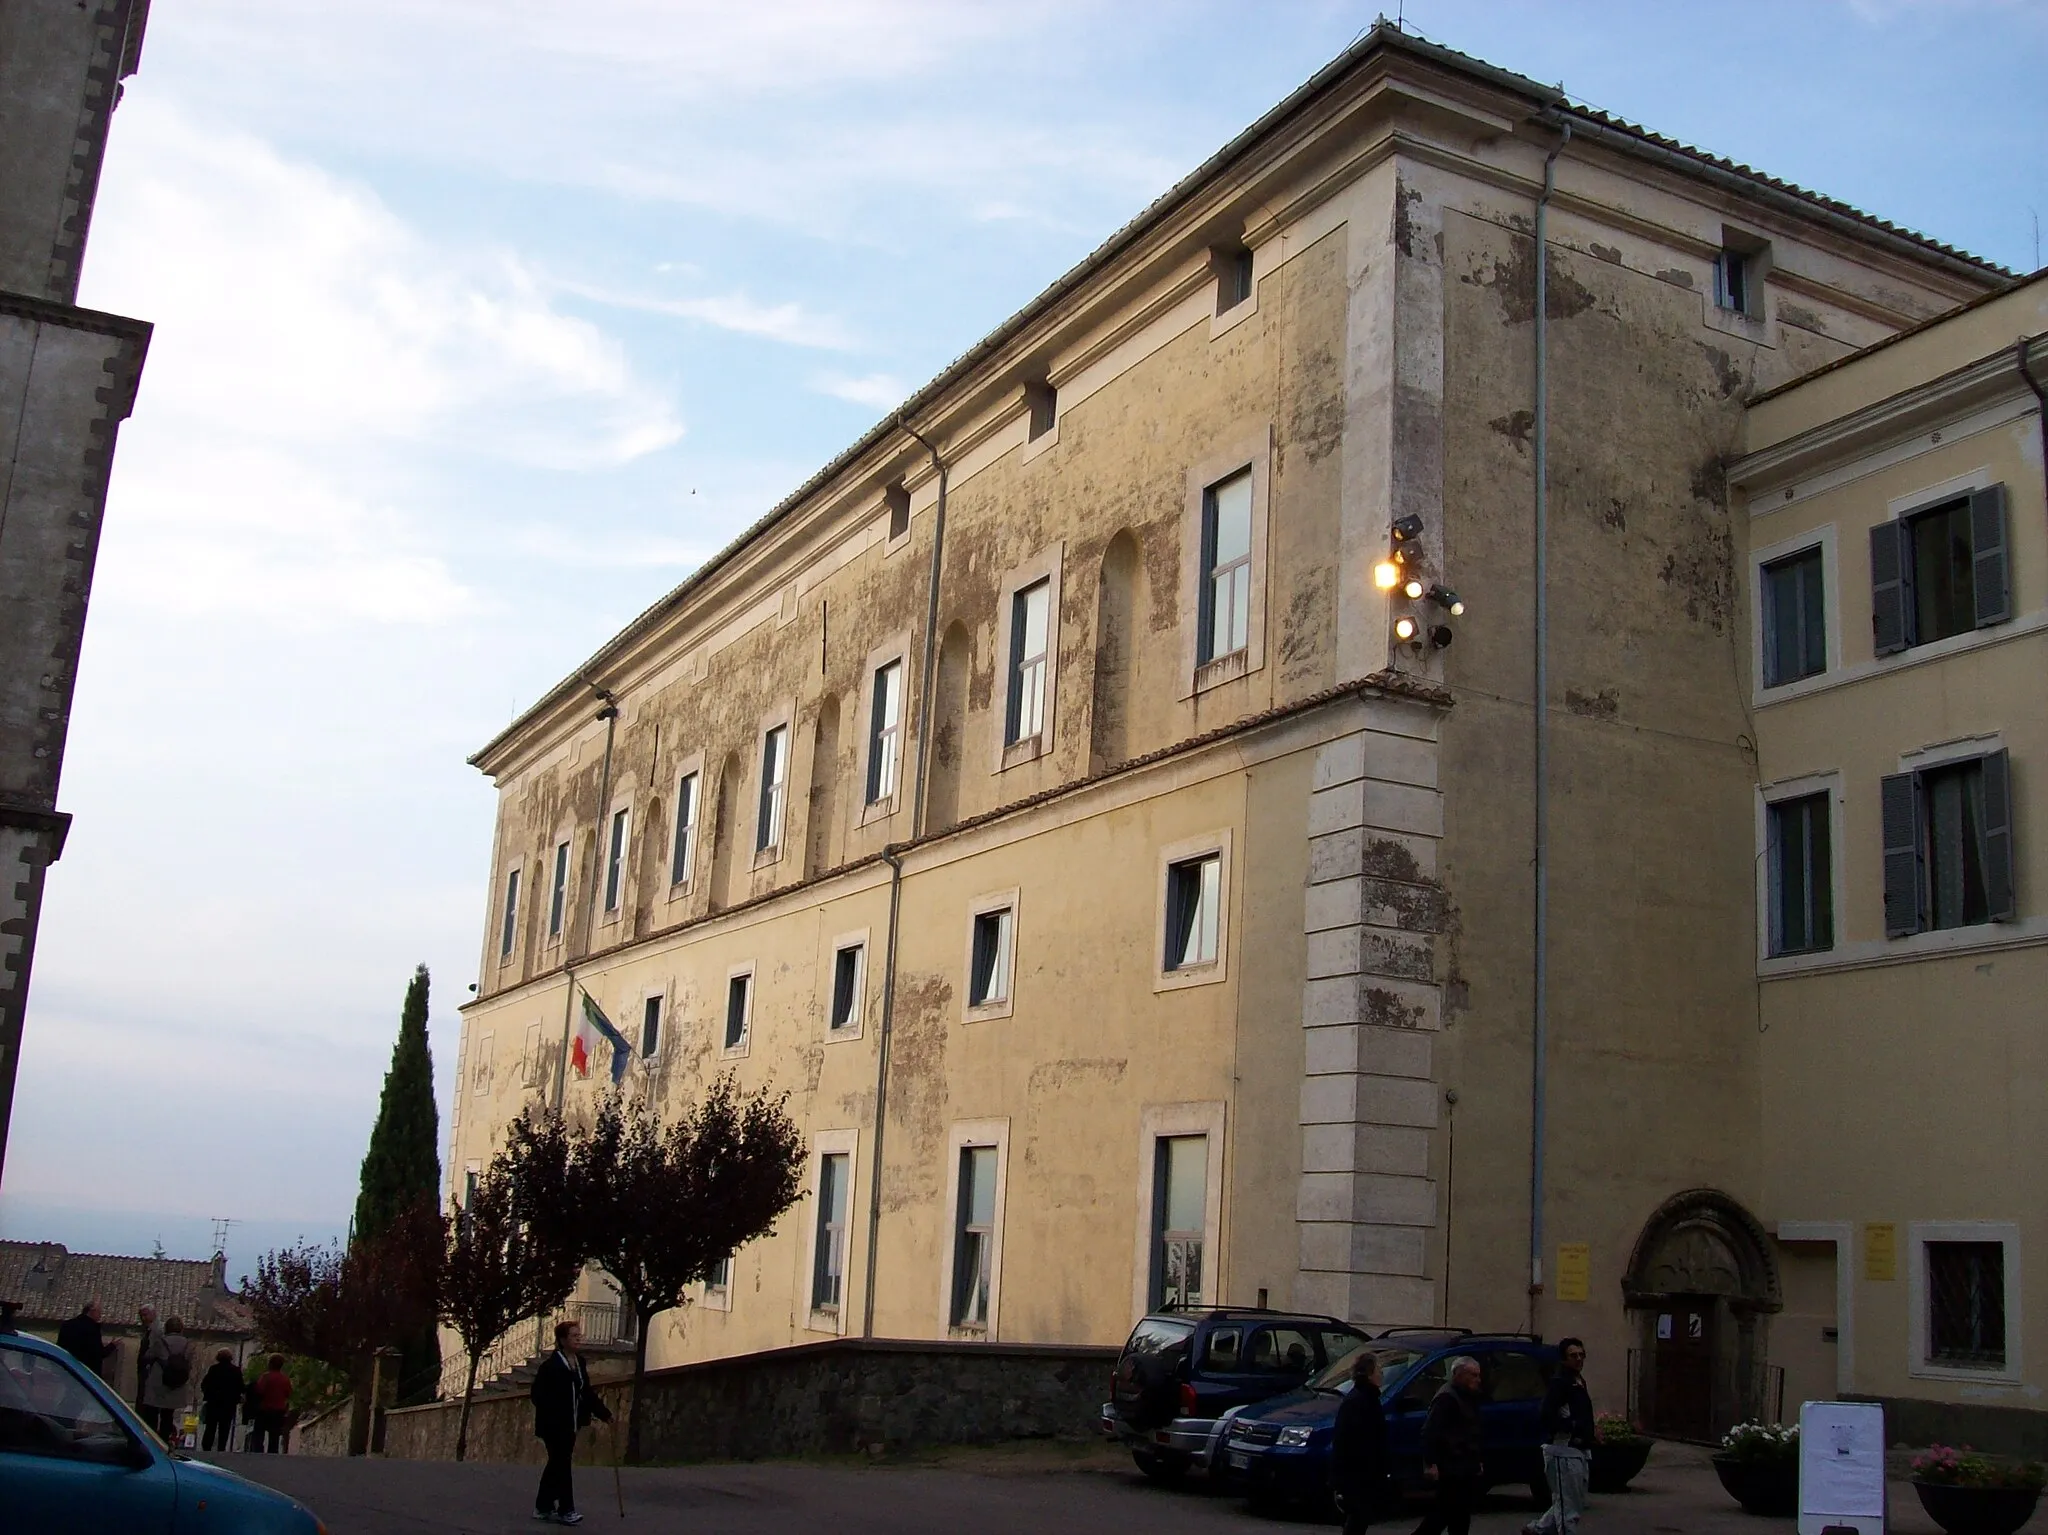 Photo showing: Doria Pamphilj palace in San Martino al Cimino, Viterbo, Italy